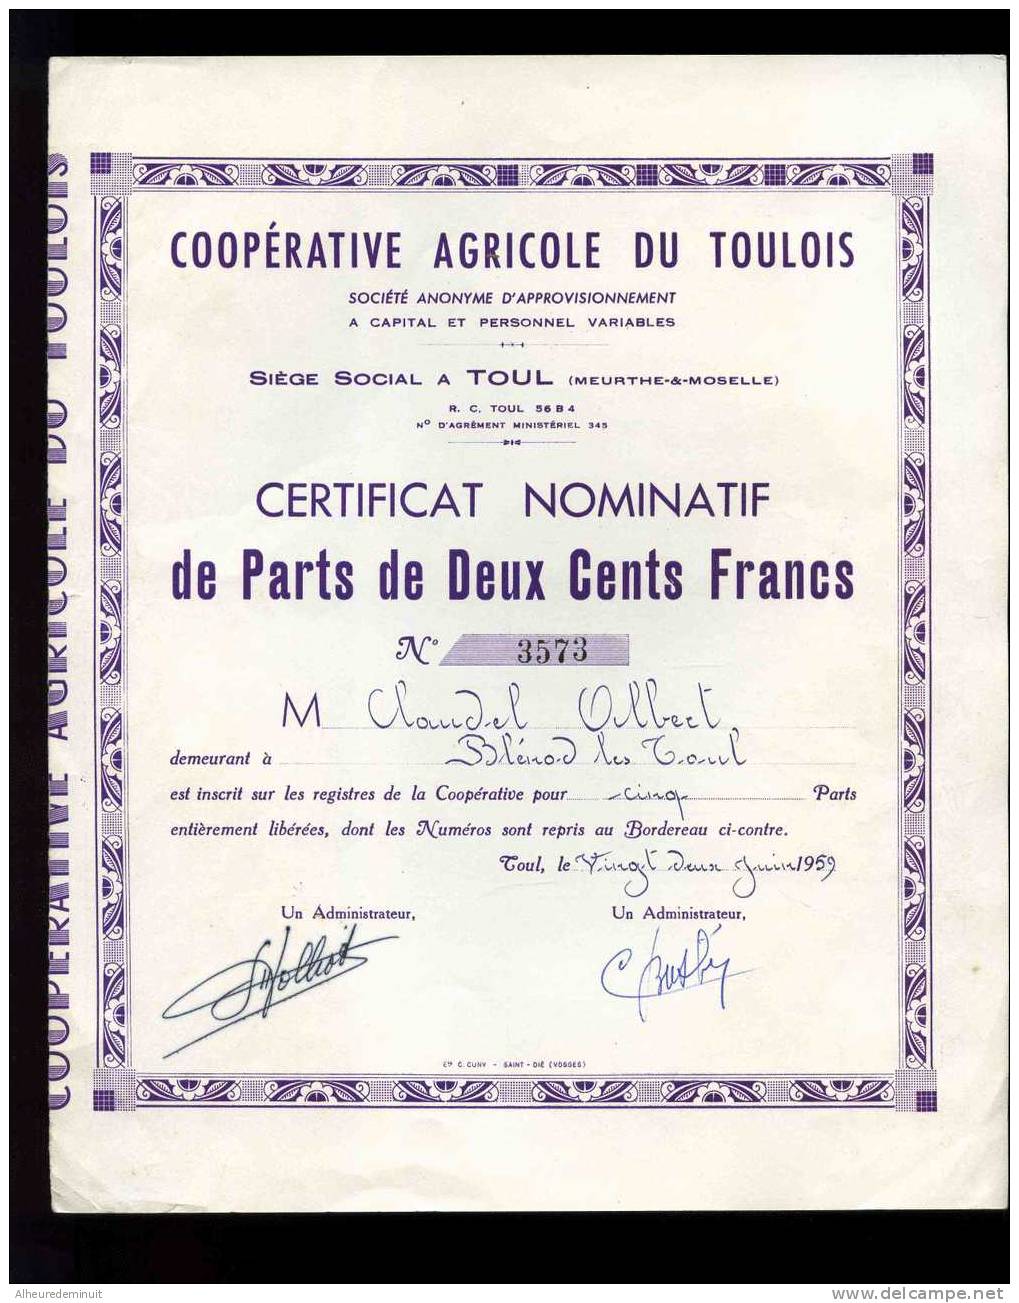 COOPERATIVE AGRICOLE DU TOULOIS"CERTIFICAT NOMITATIF DE PARTS DE 200 CENTS FRANCS"1959"5 Parts"anciens Francs - Landbouw